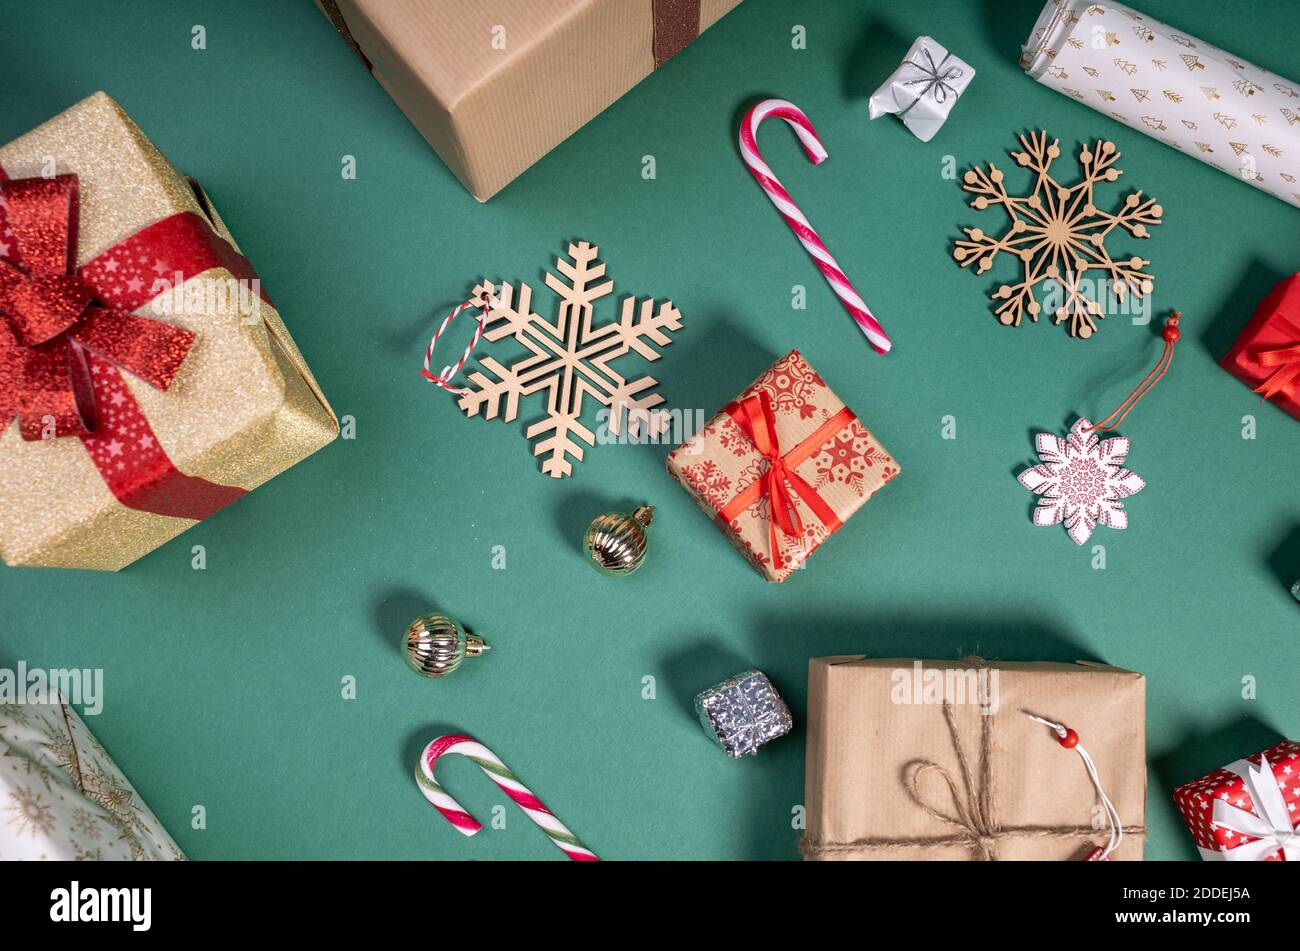 piso con regalos de navidad y decoración festiva Foto de stock